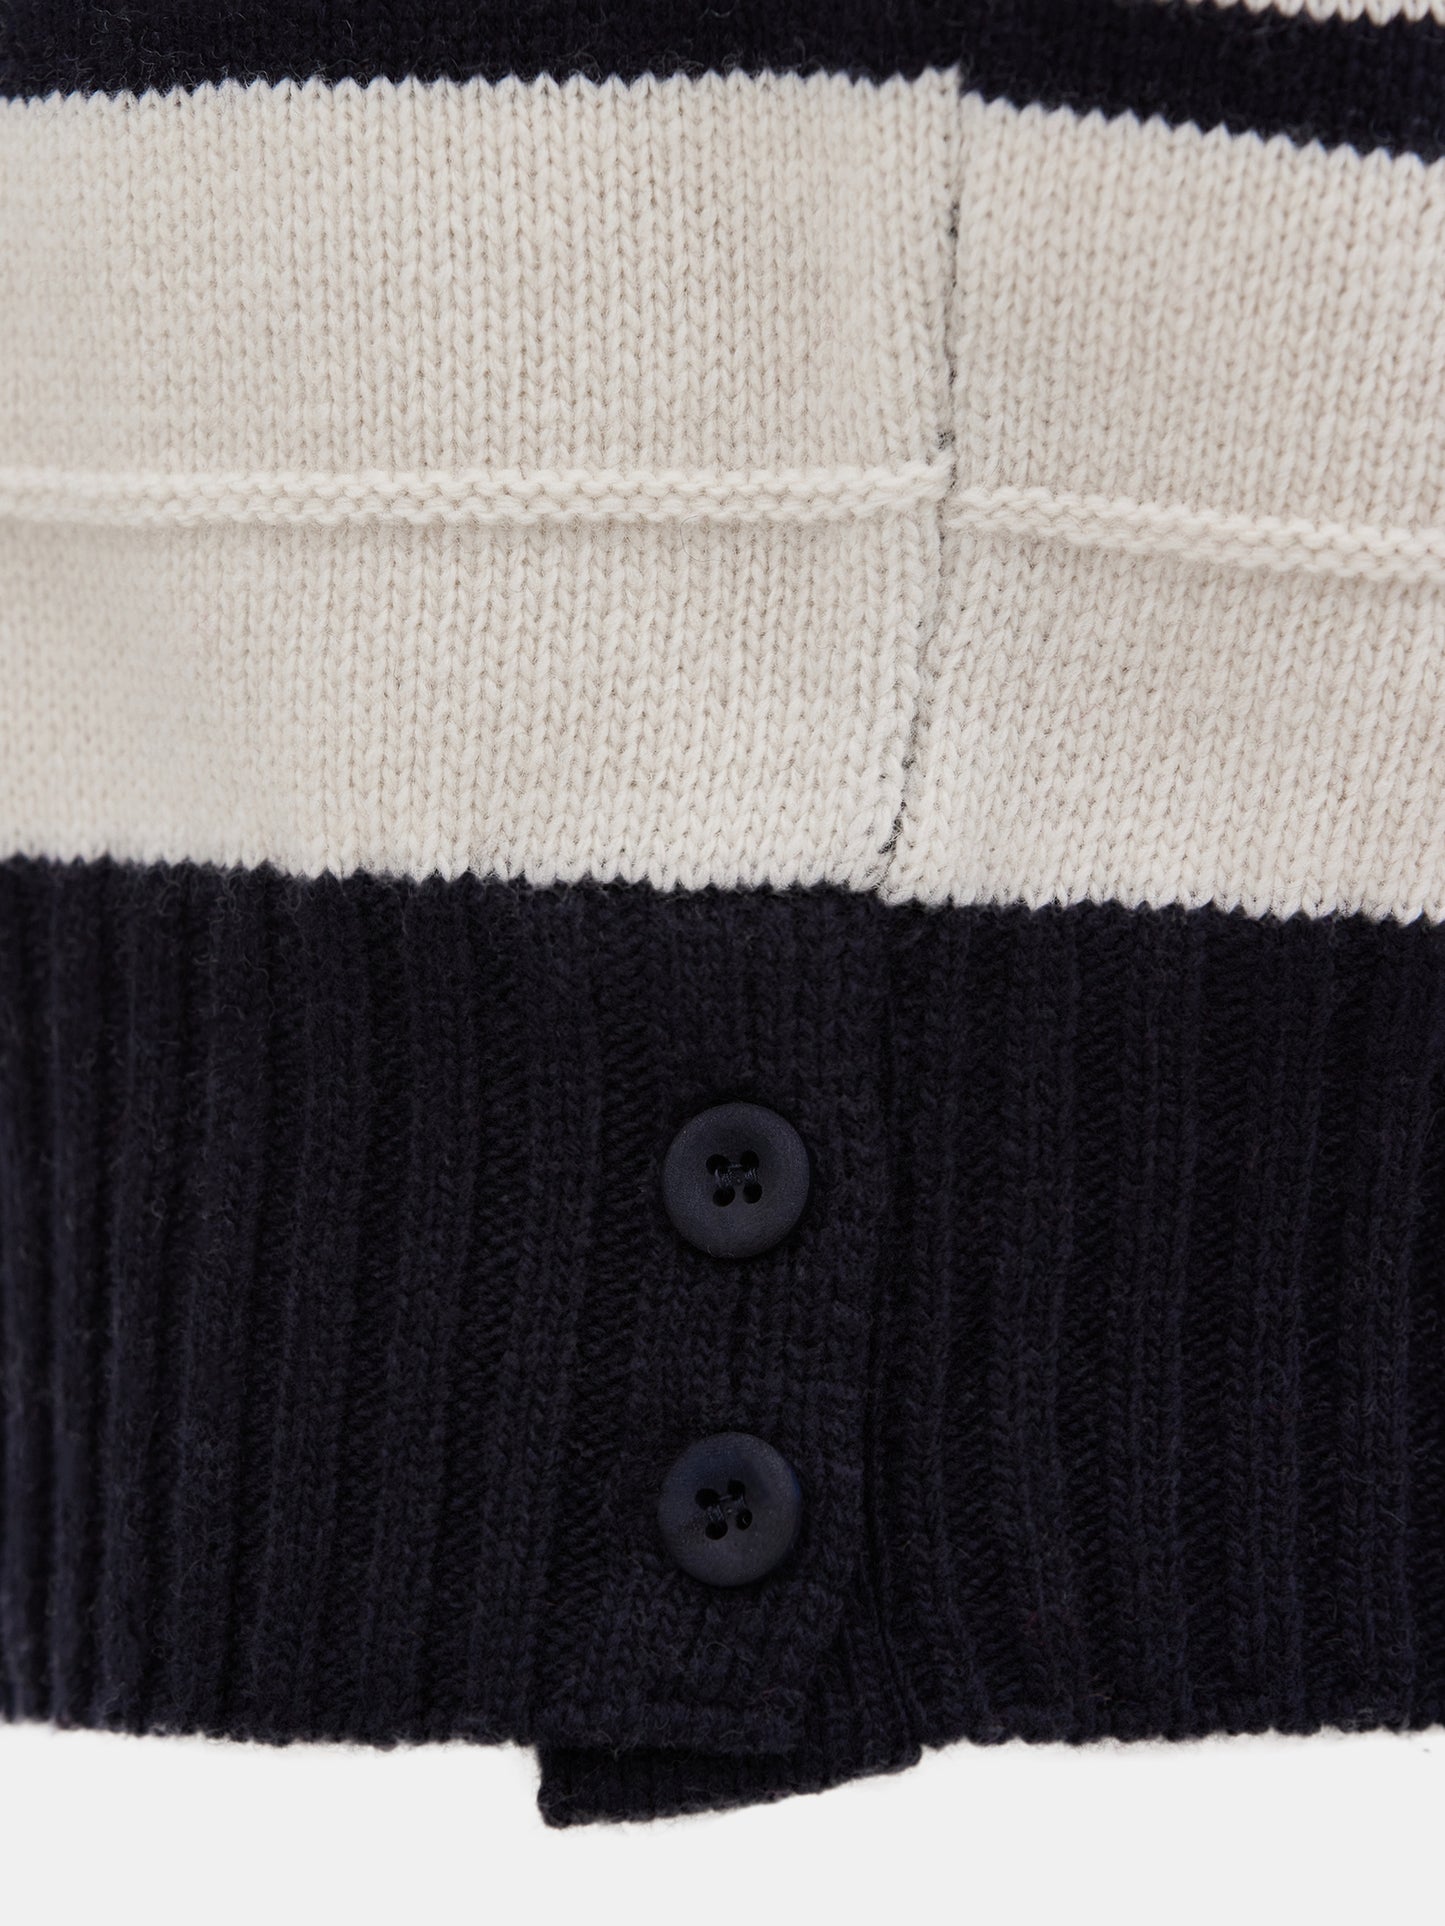 Fine Wool Stripe Knit, Ivory/Black